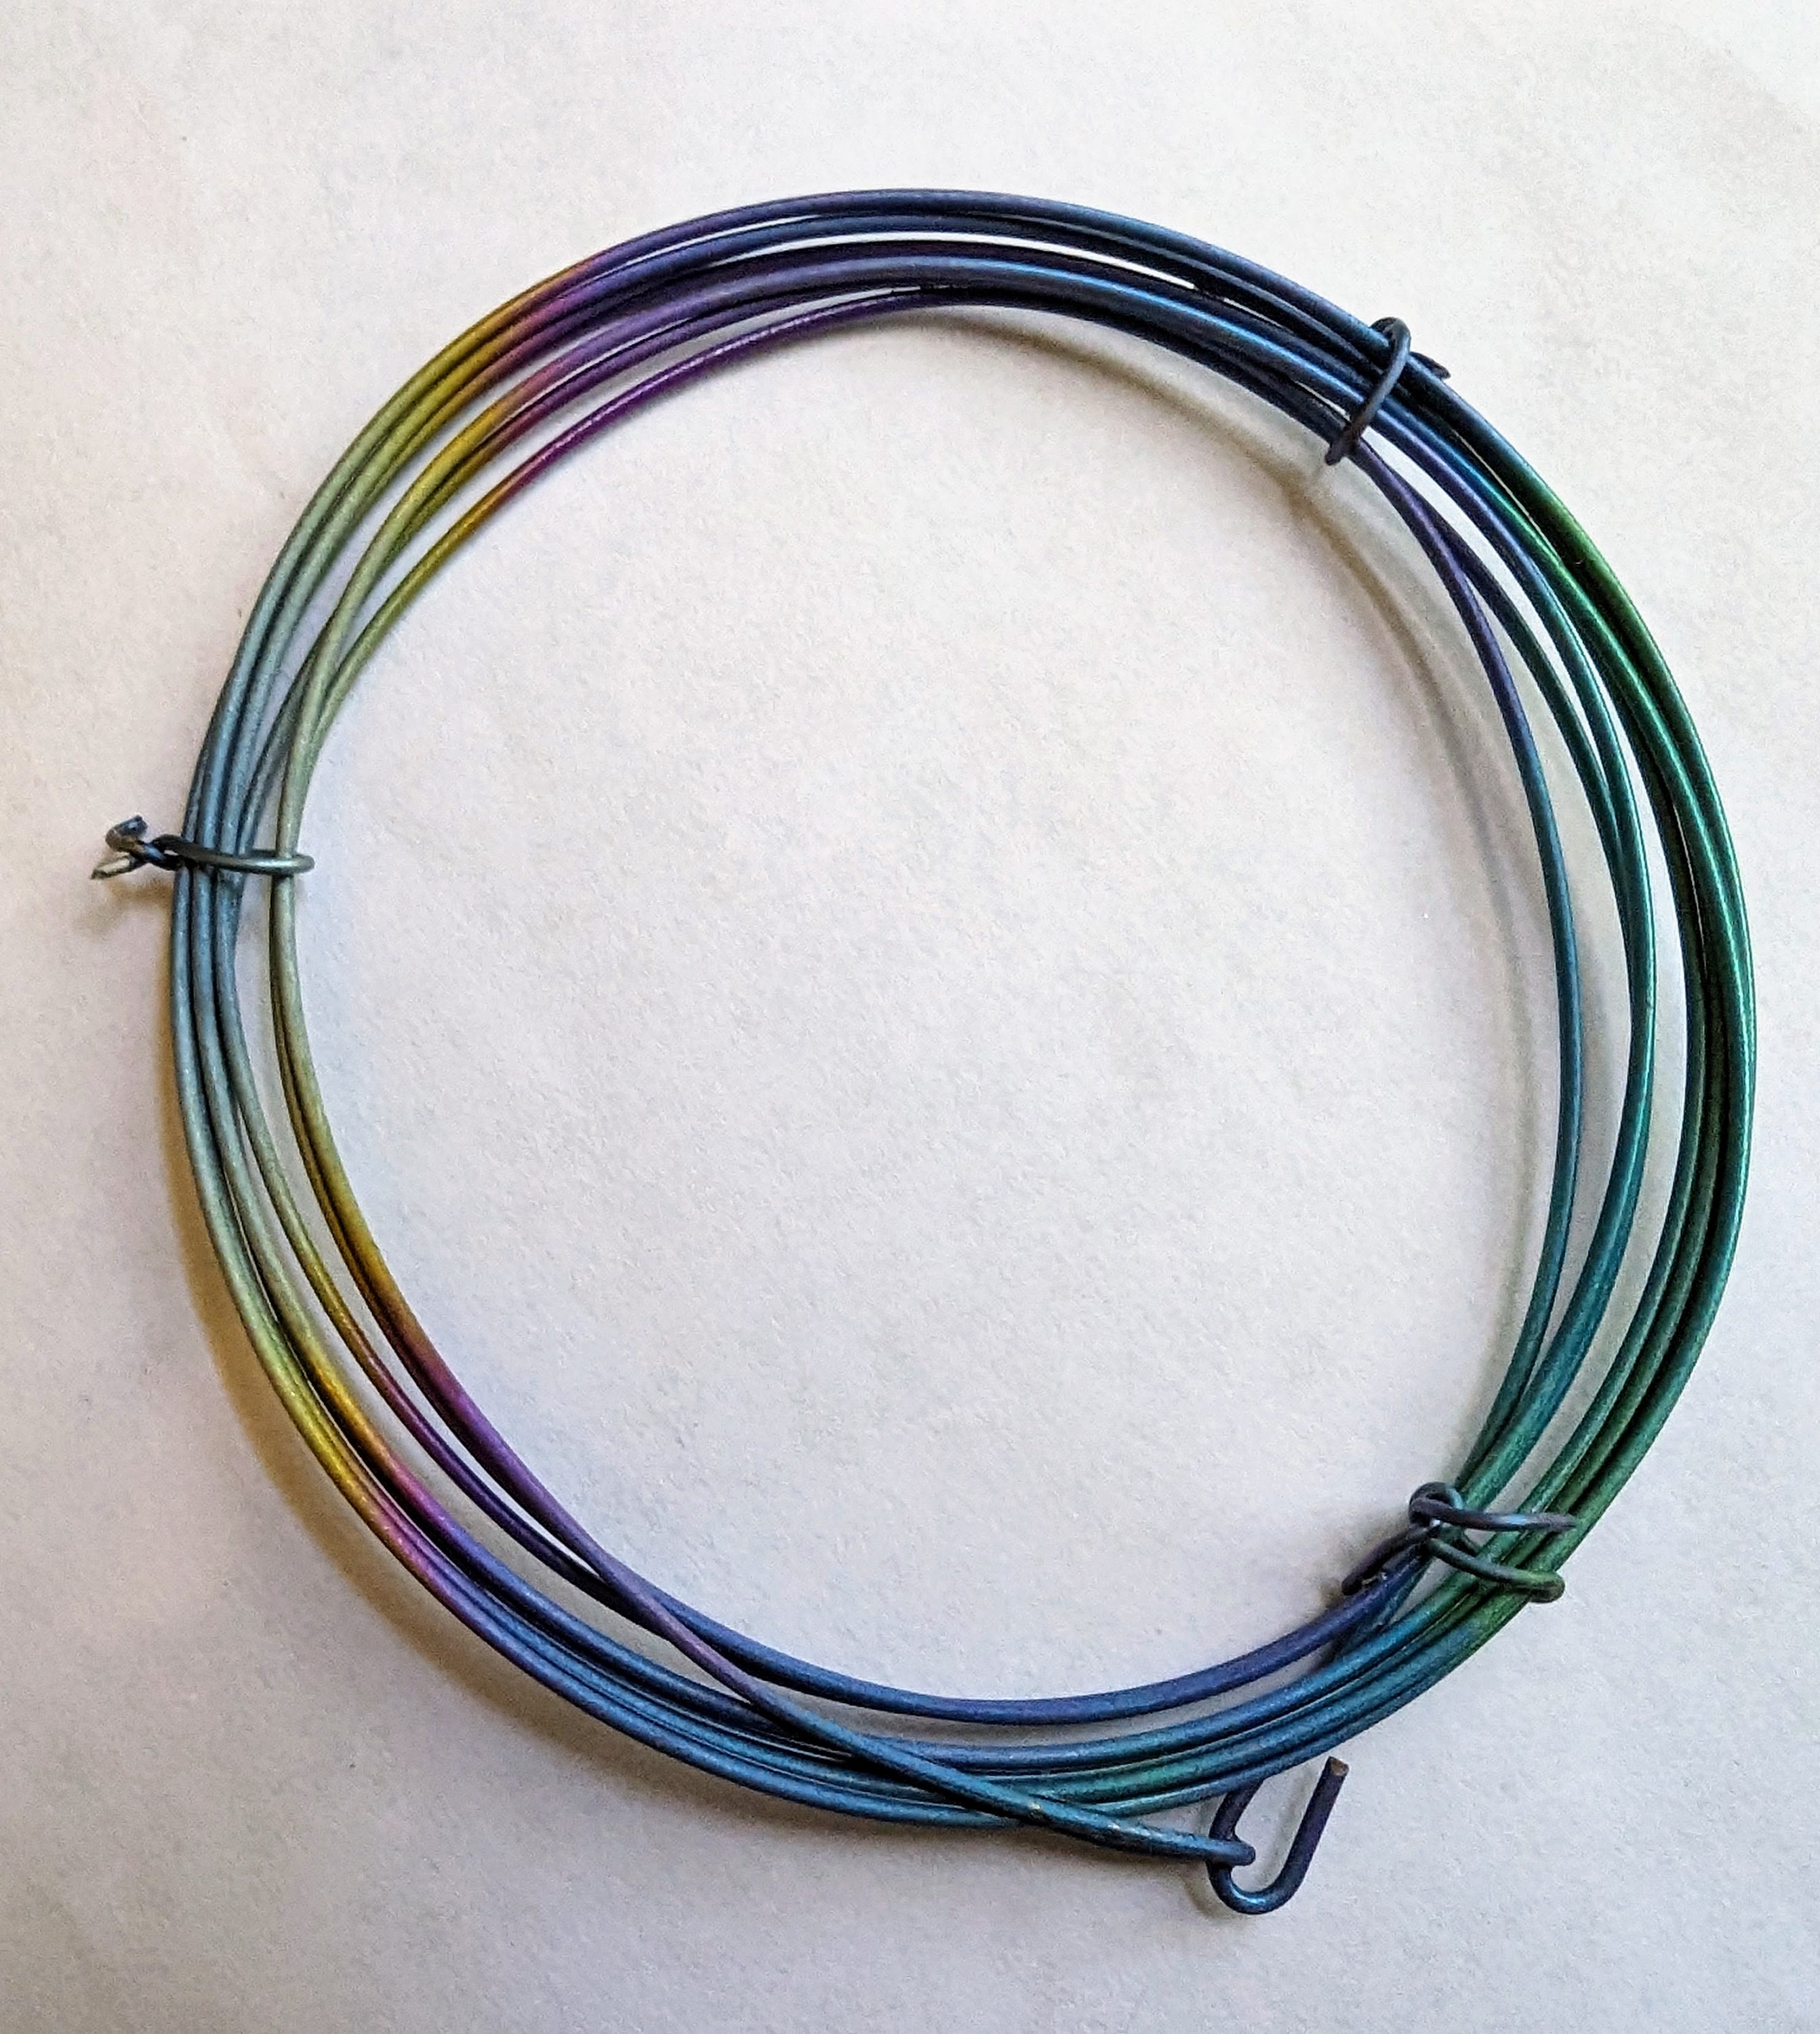 Green Stub Wire Florist Wires - 18 19 20 22 24 26 28 gauge - 7 9